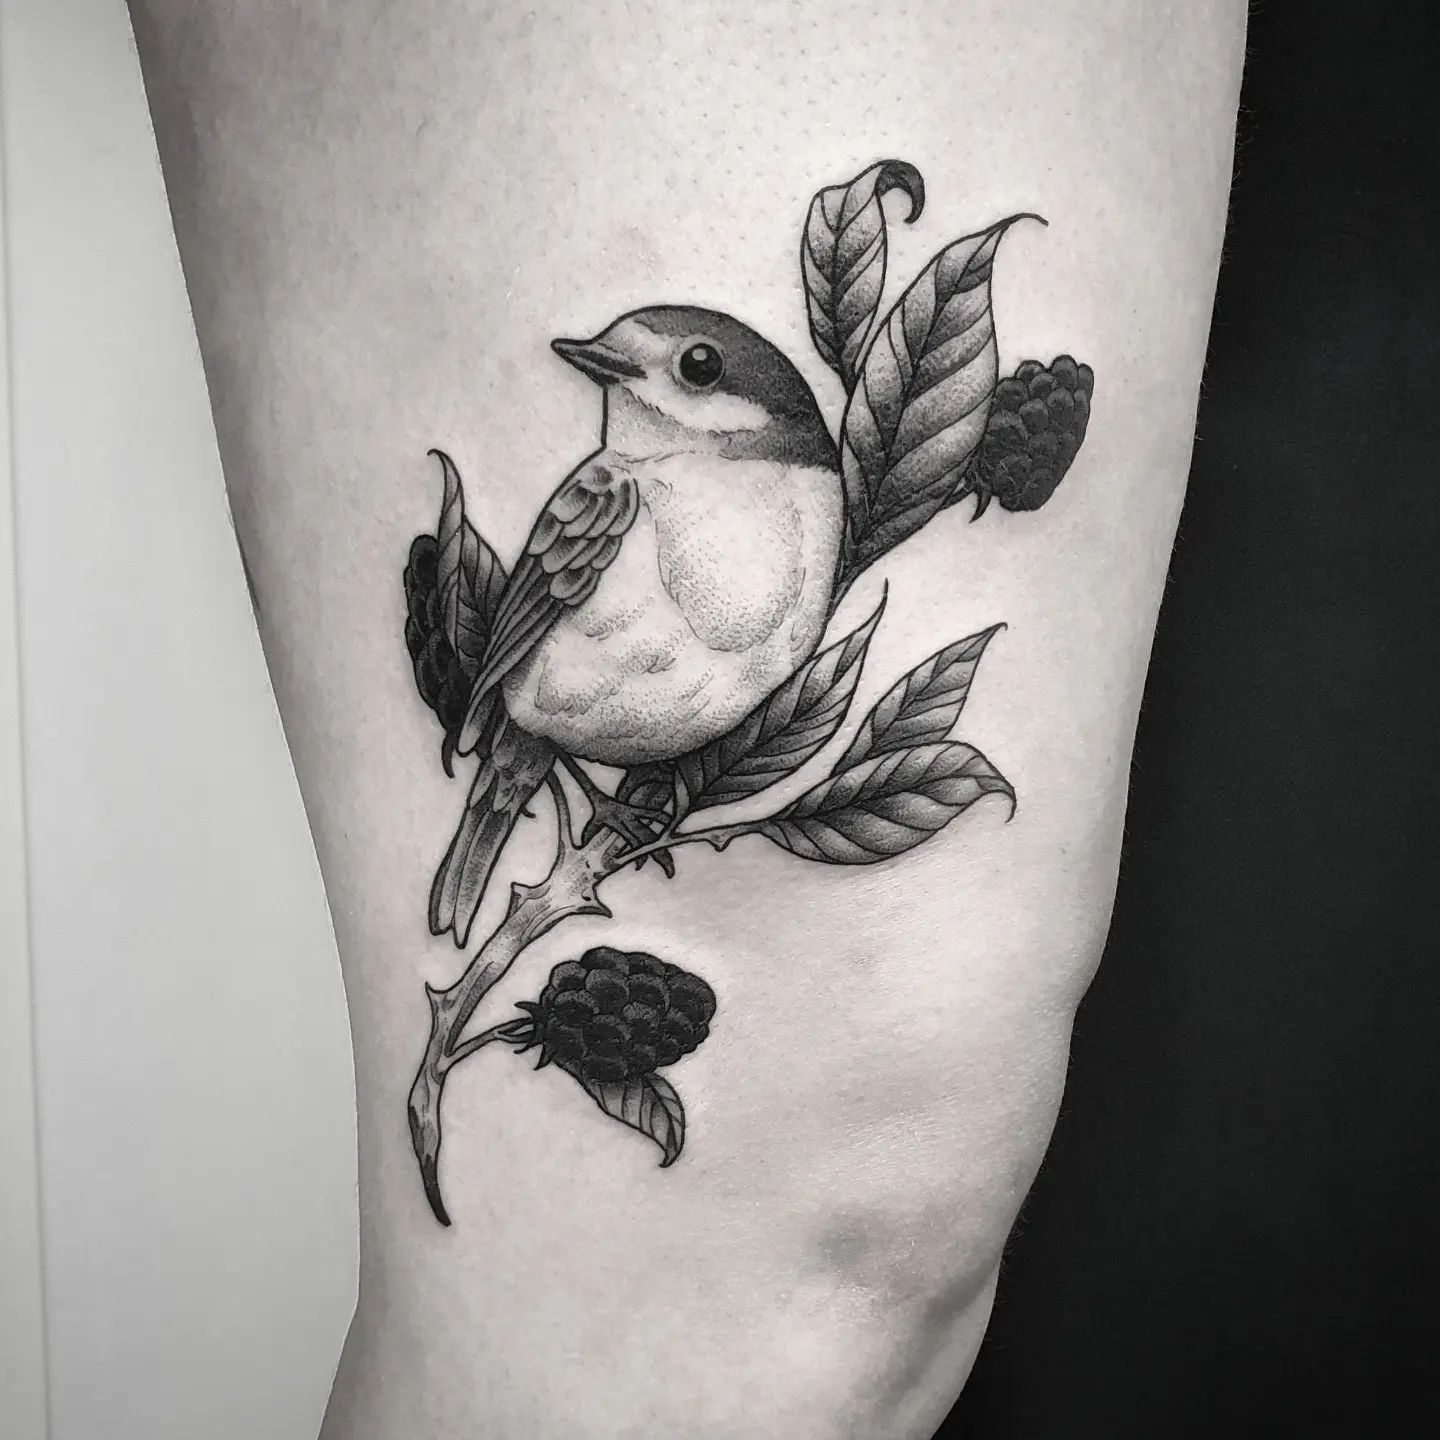 Little bird fella #tattoo #ink #tattooartist #tattoos #bird #blackwork #inked #a